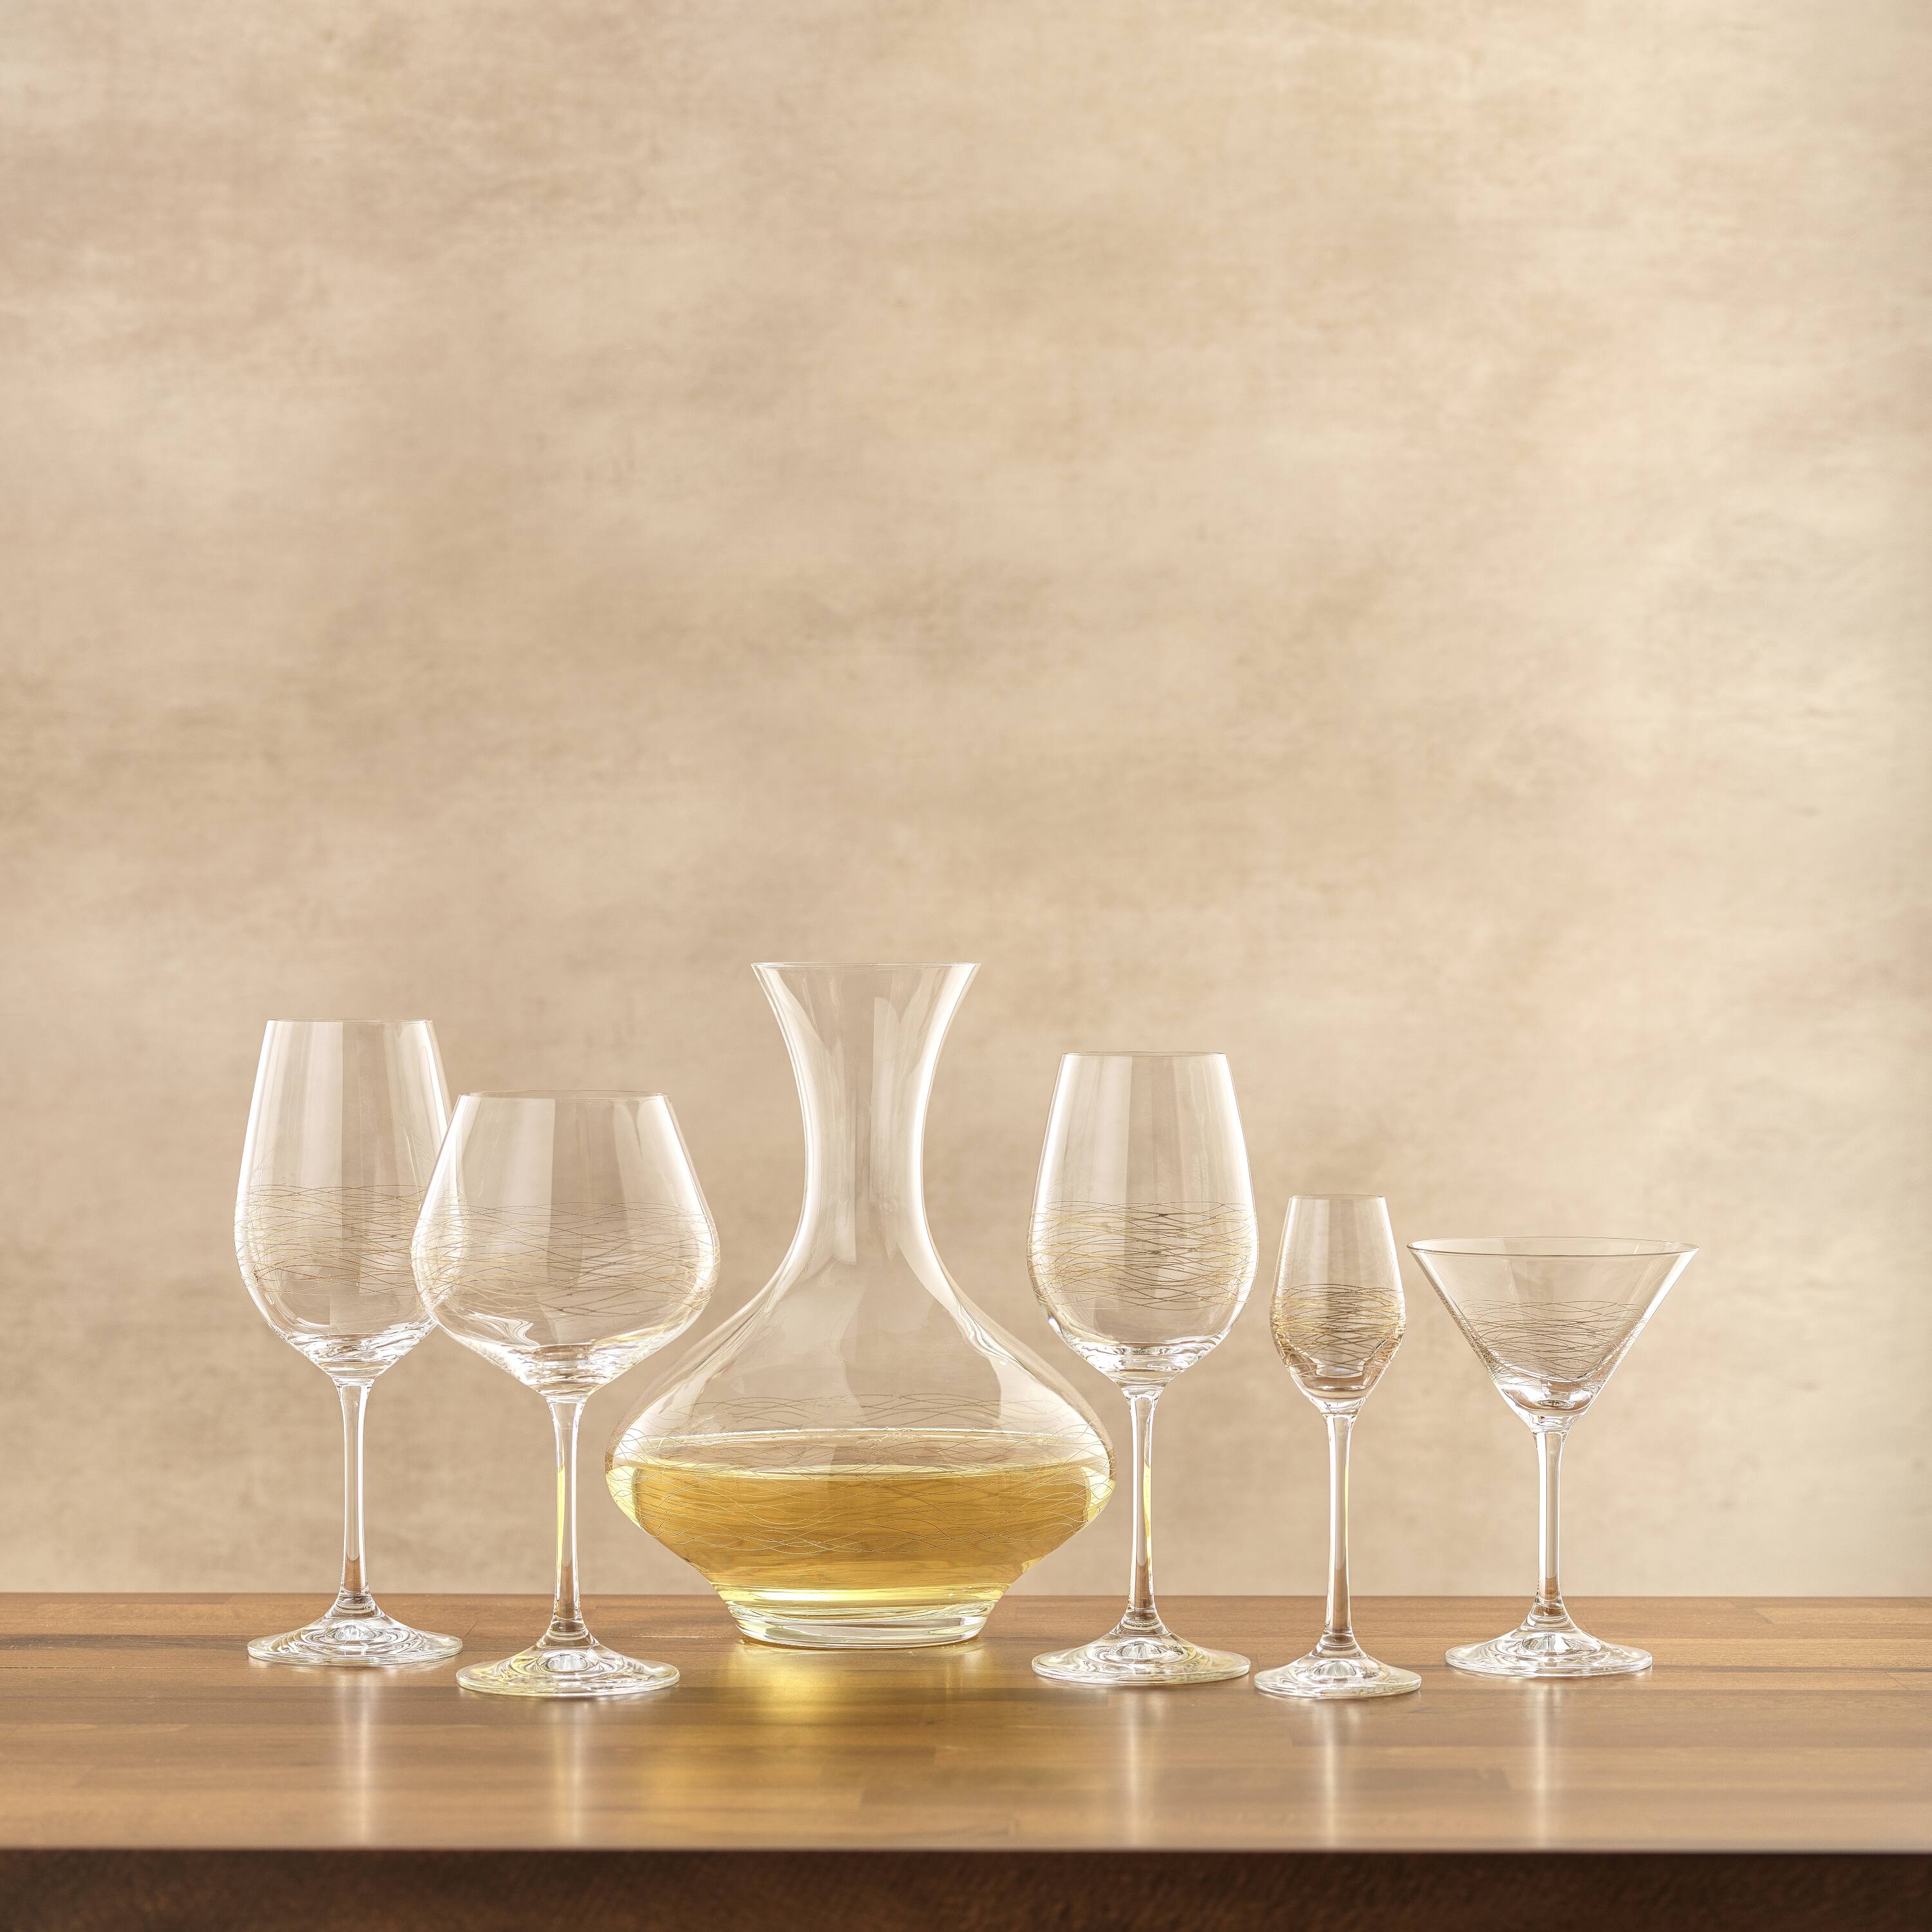 JoyJolt® Golden Royale 17oz. Crystal Red Wine Glasses, 2ct.